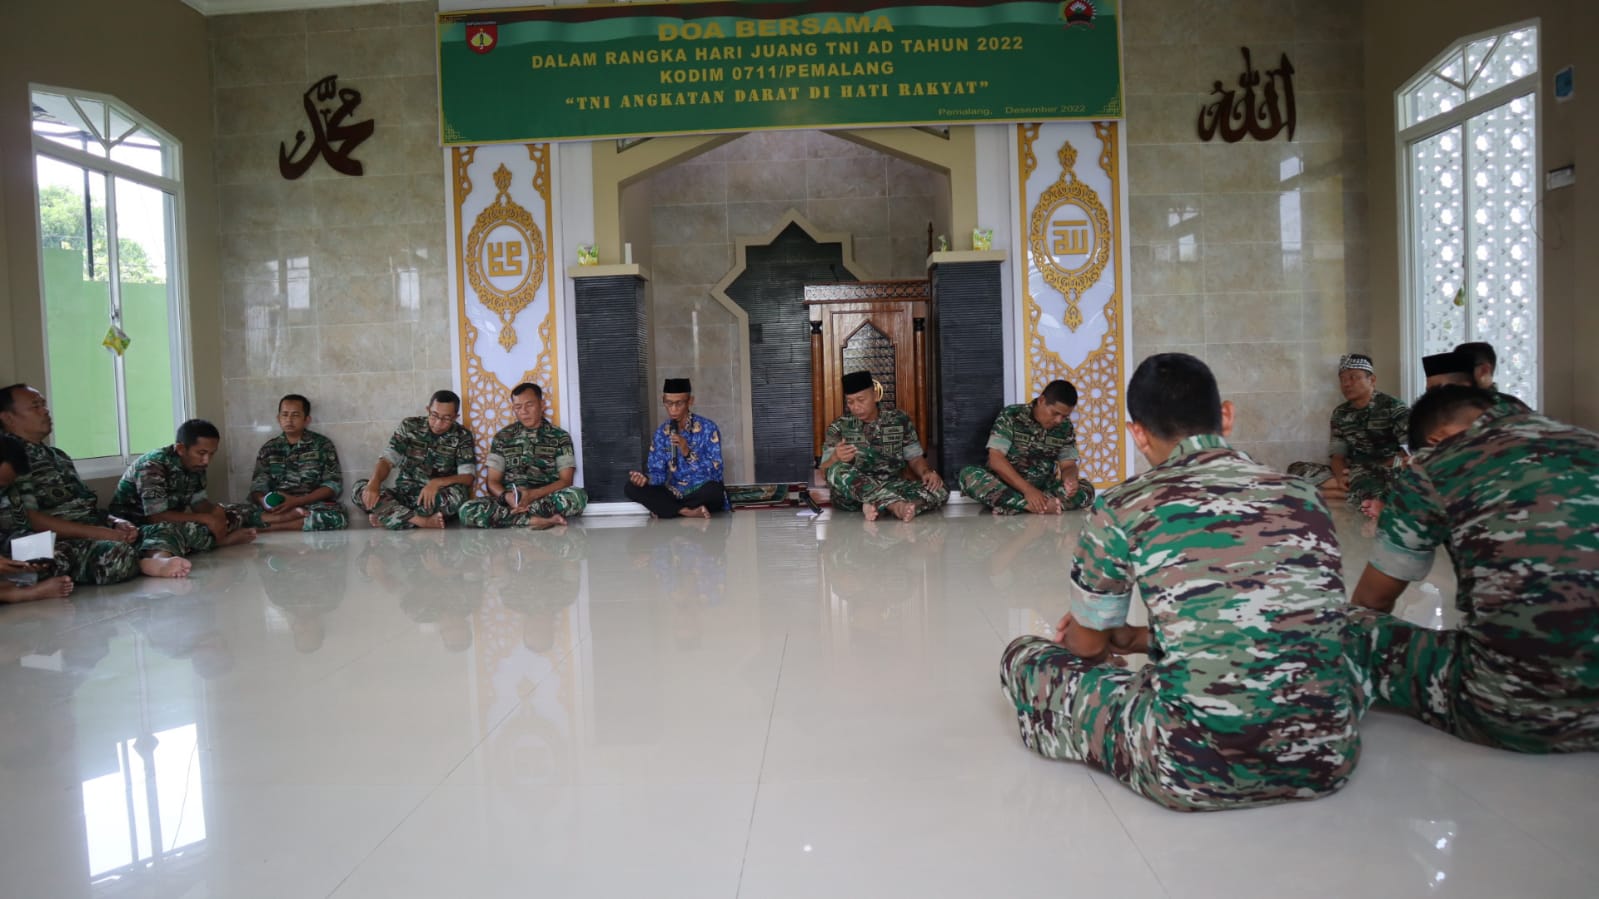 Kodim Pemalang Gelar Doa Bersama dalam Rangka Hari Juang TNI AD ke 77 Tahun 2022